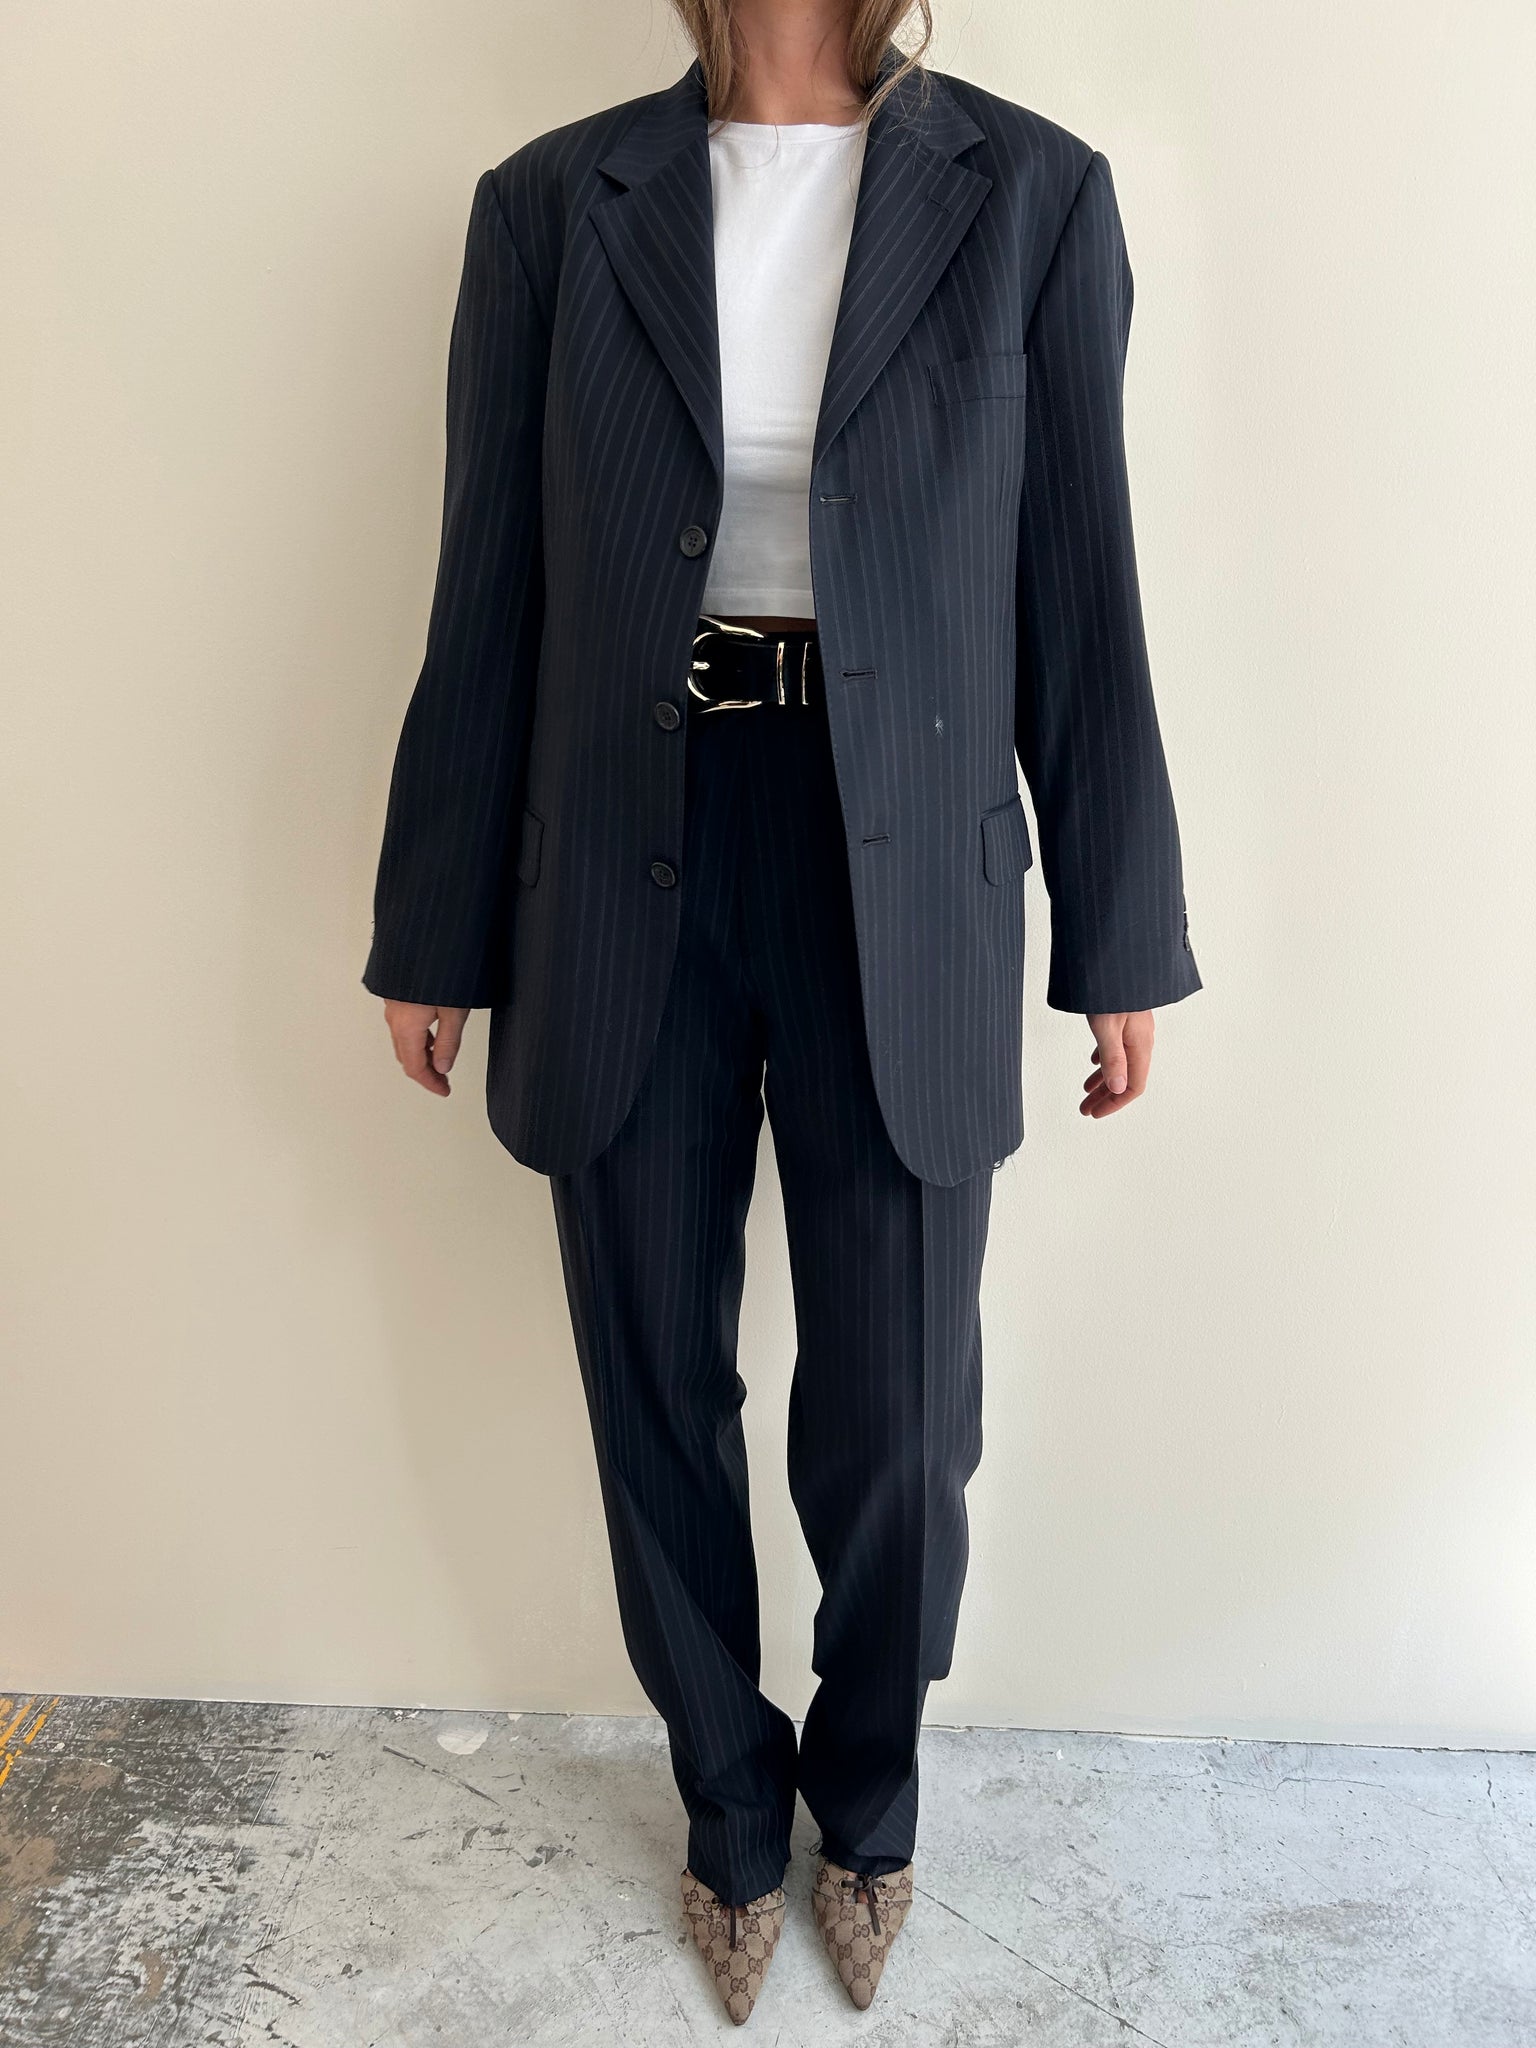 Vintage Yves Saint Laurent suit in dark blue